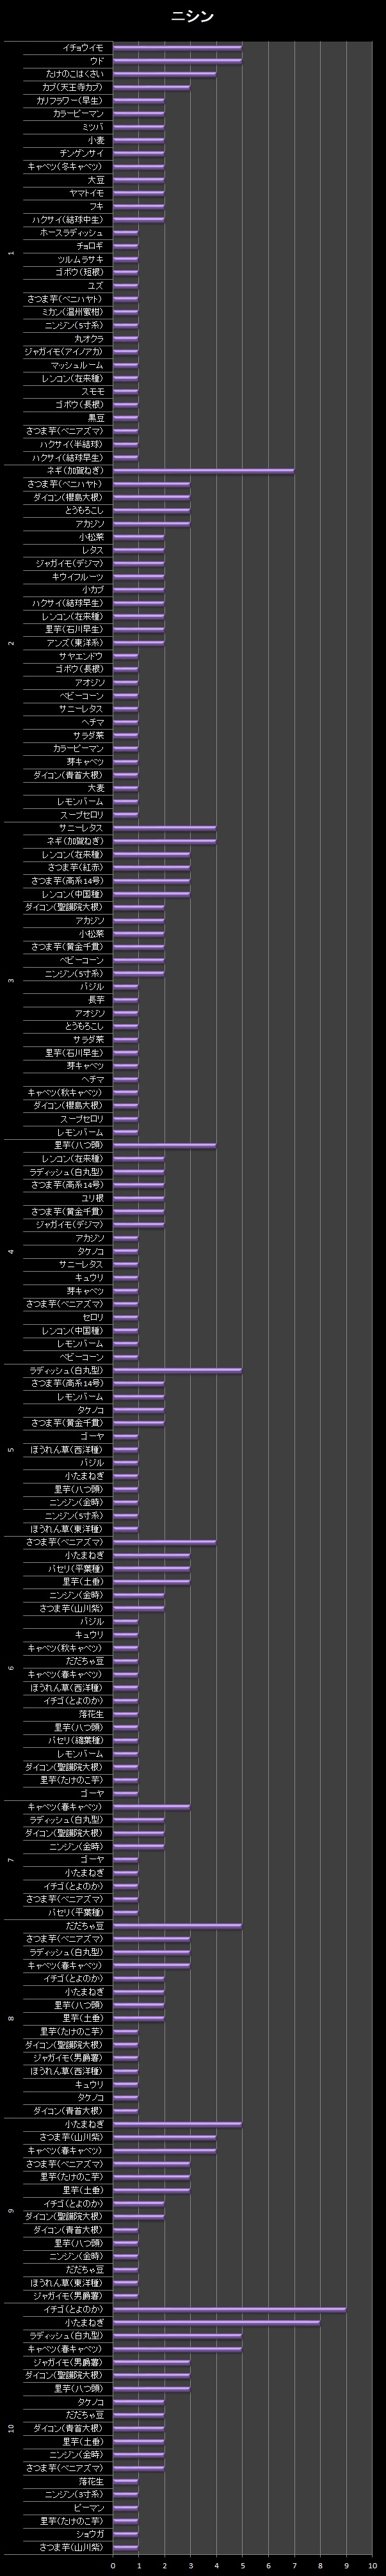 横棒グラフ/ニシン【２回目】